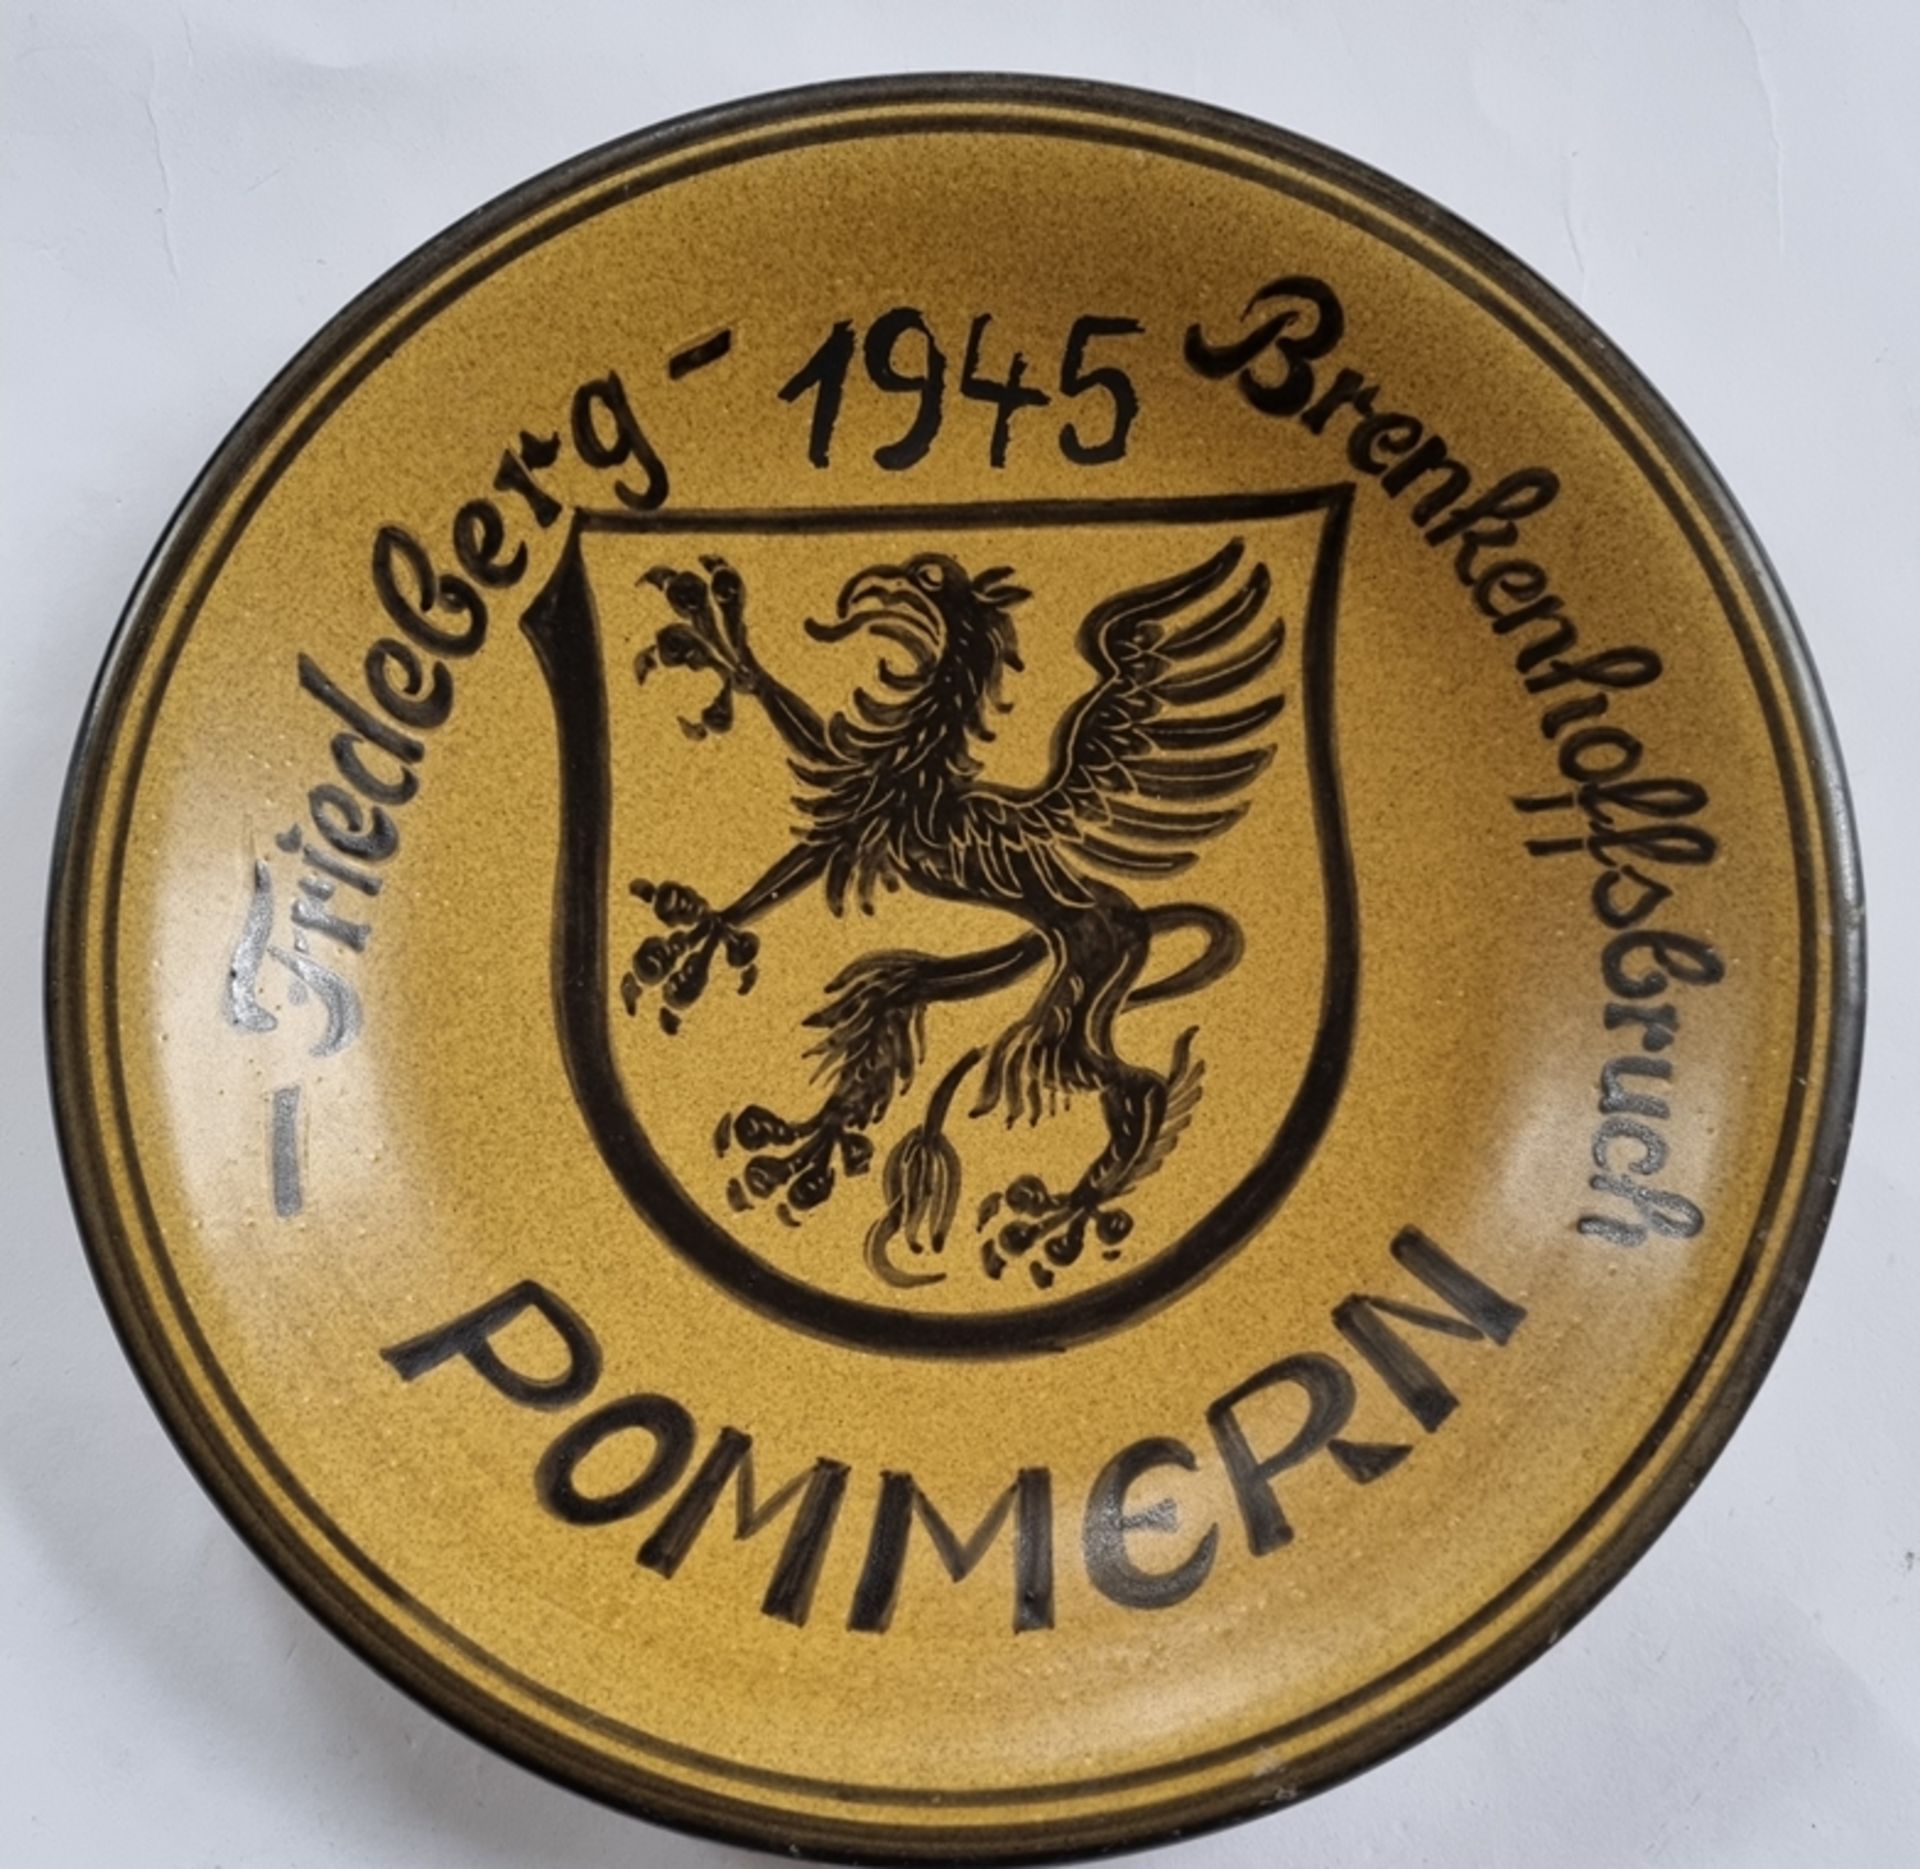 Erinnerungsteller Pommern 1945